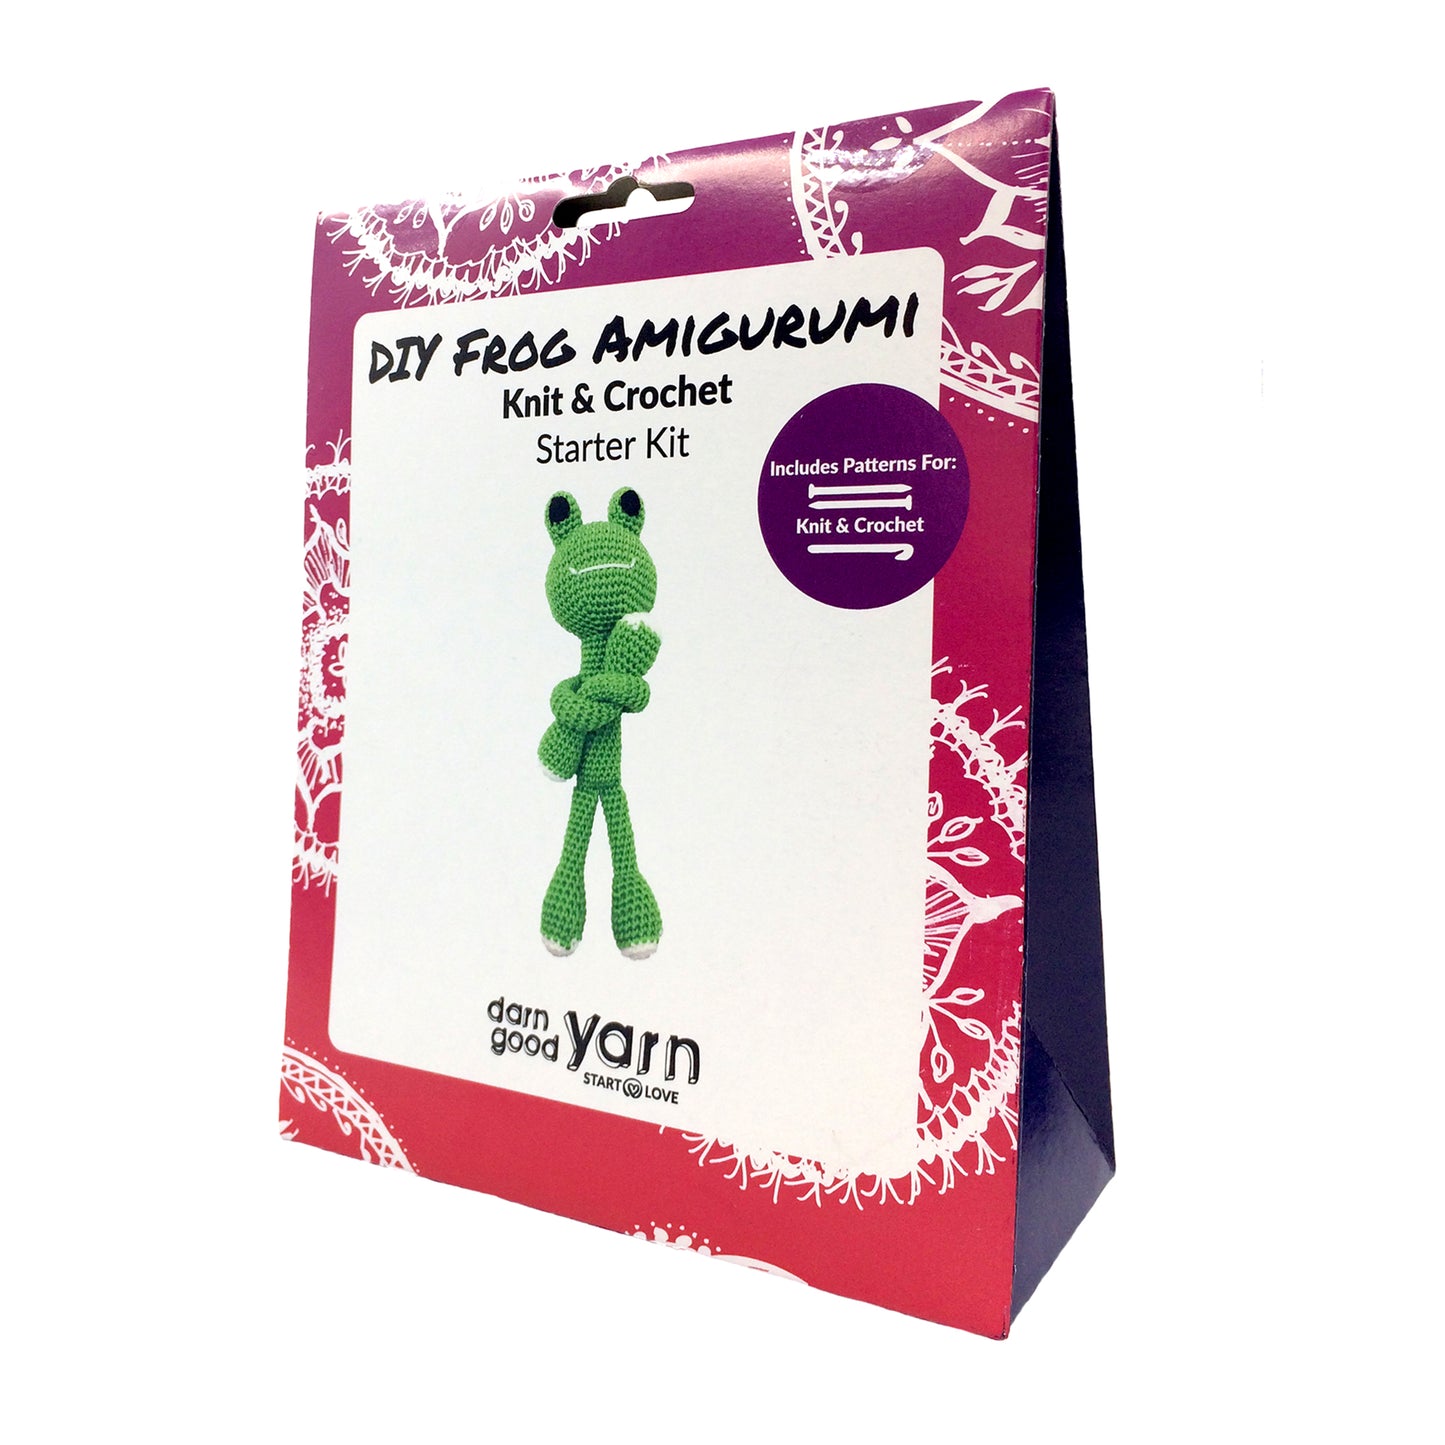 DIY frog amigurumi box 